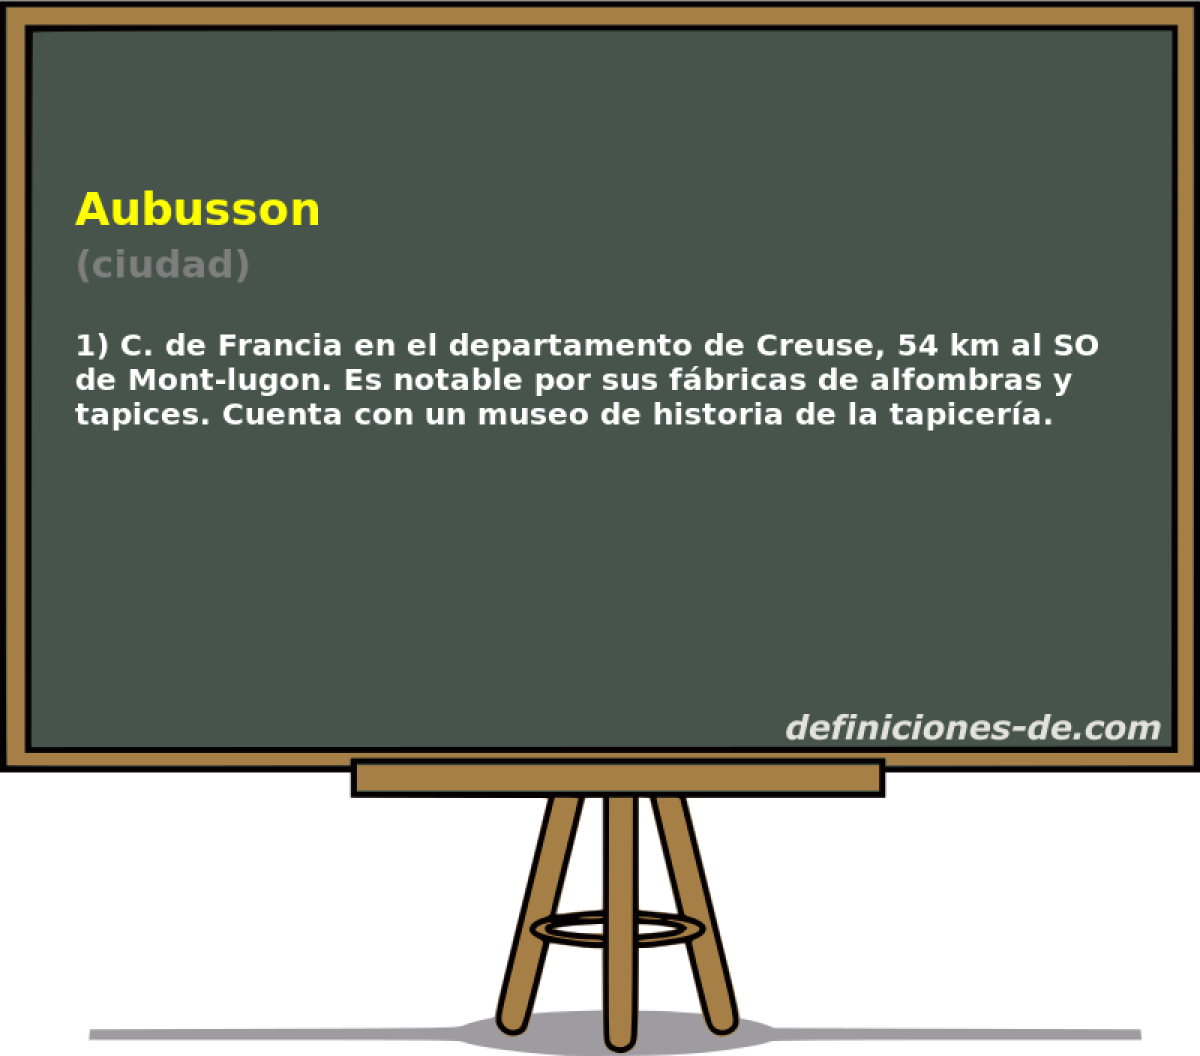 Aubusson (ciudad)